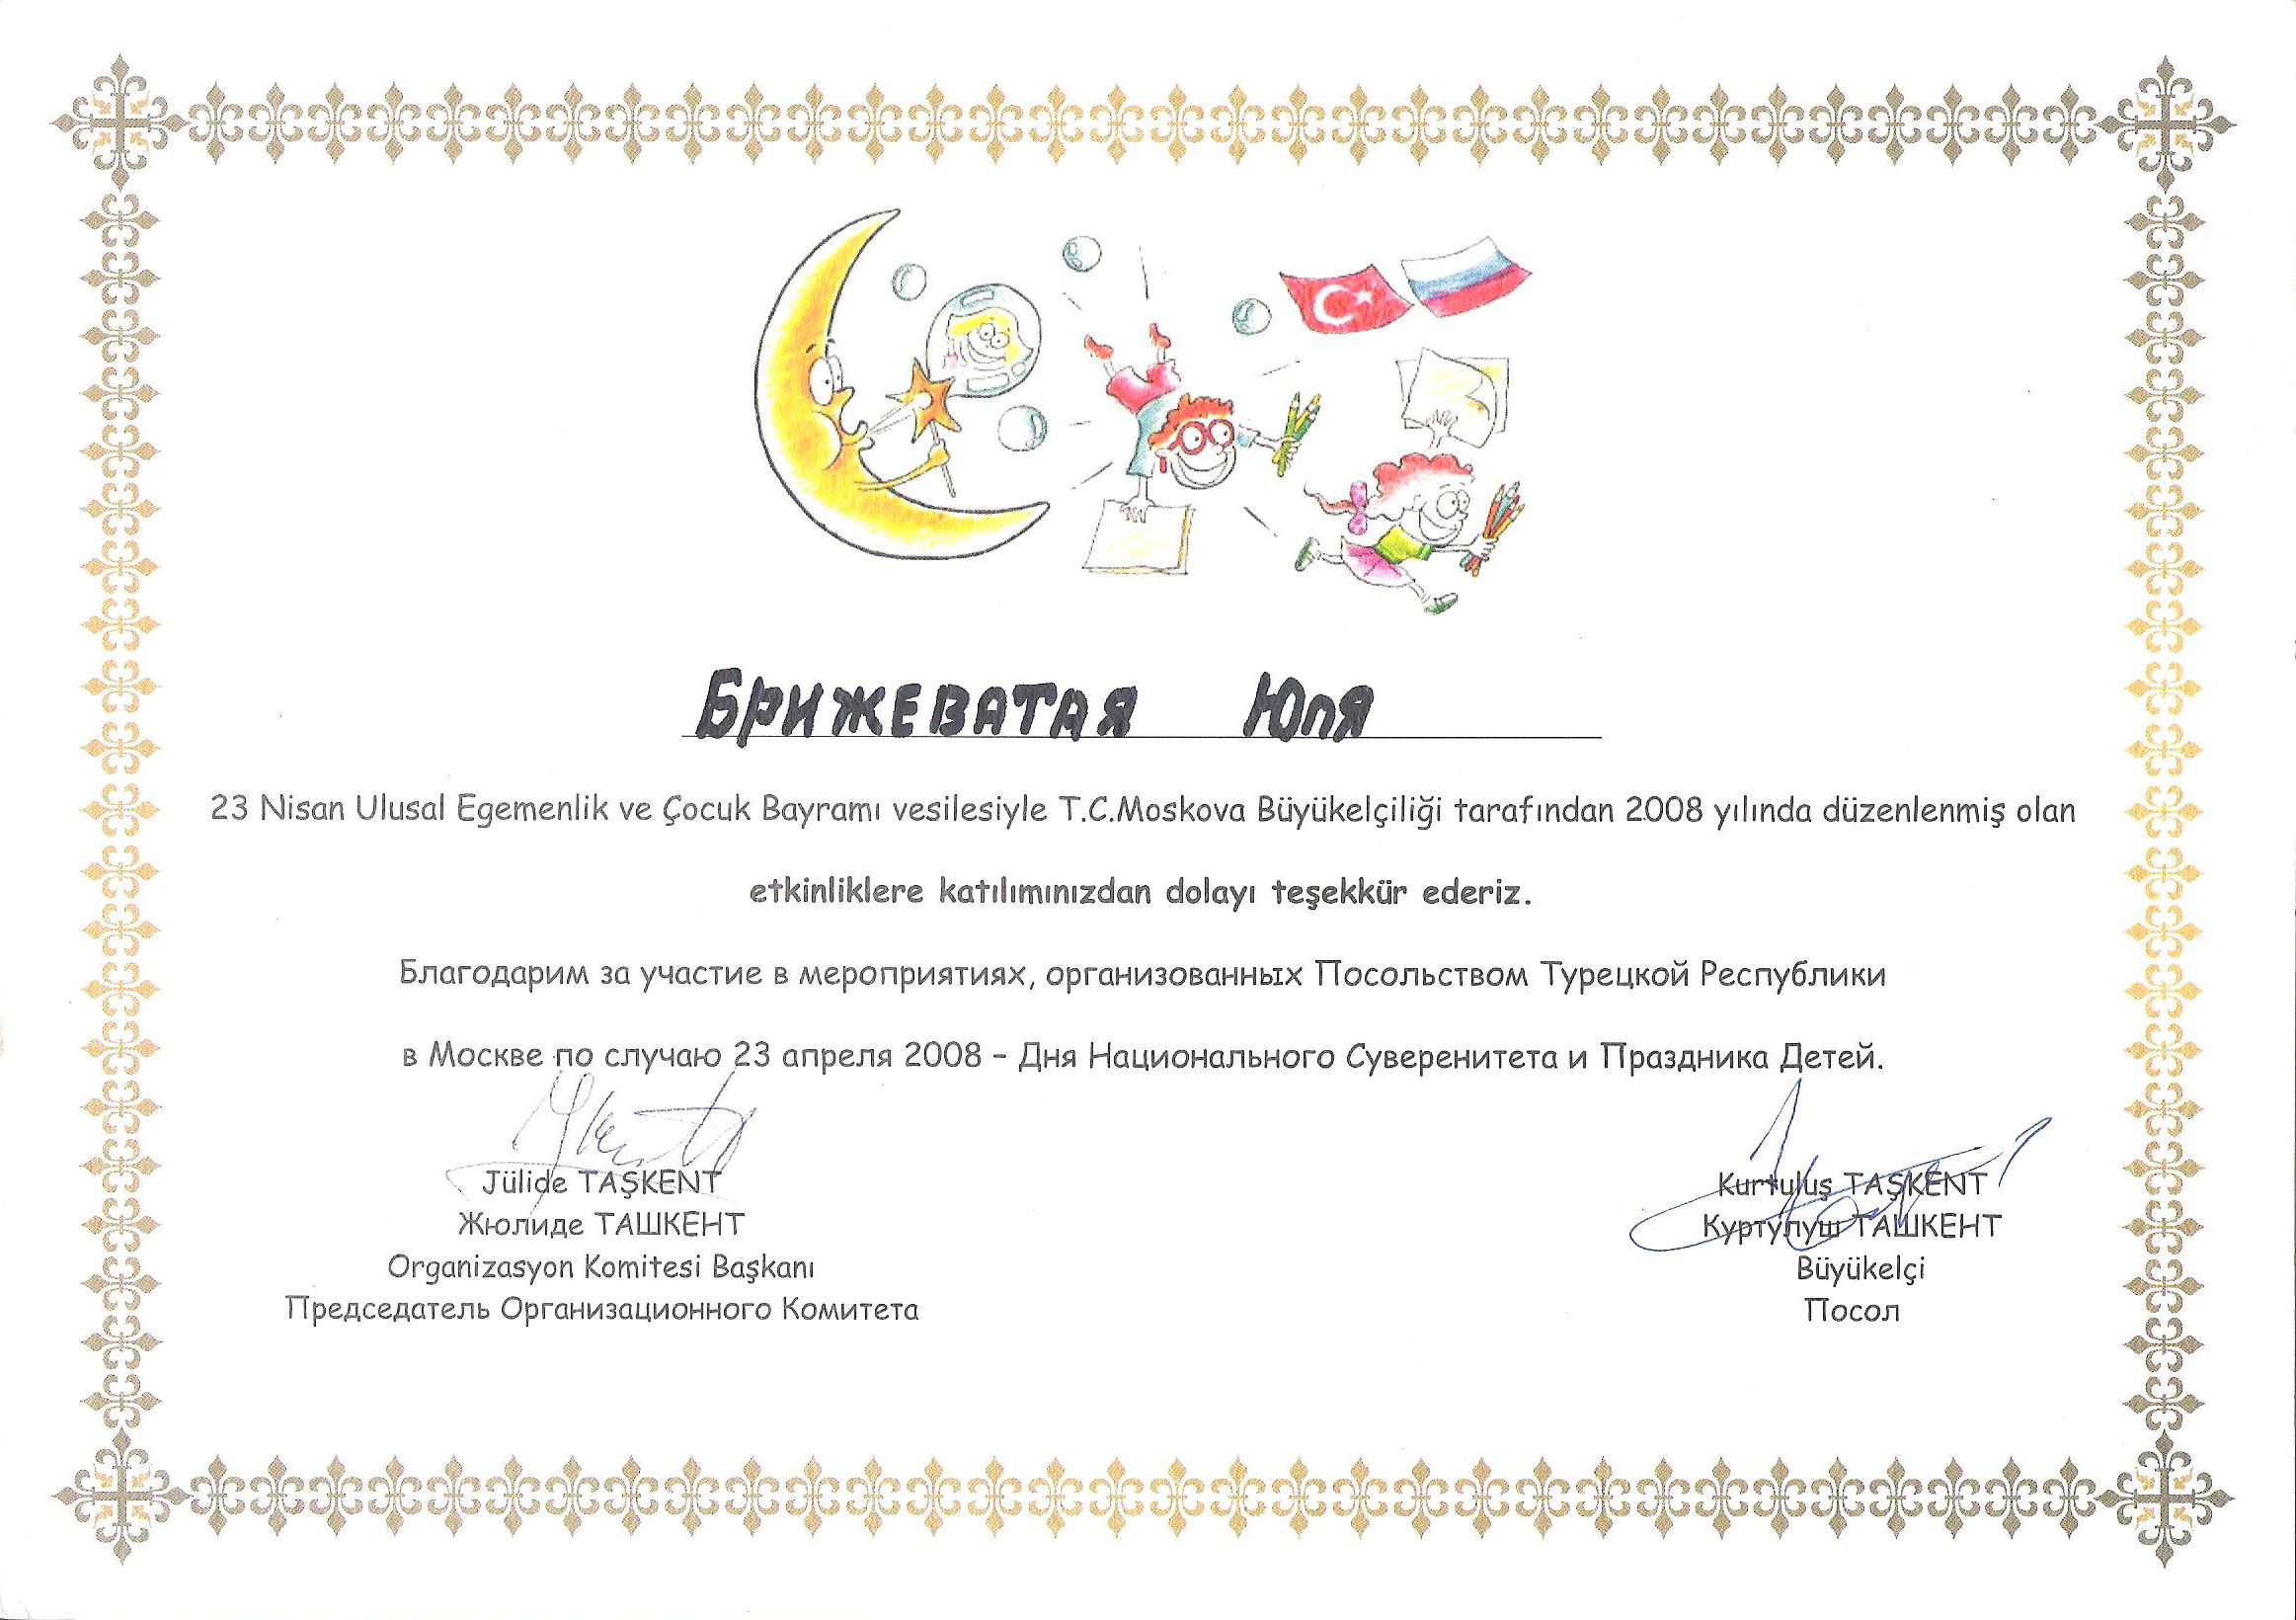 Участие в мероприятиях, организованных Посольством Турецкой Республики в Москве по случаю 23 апреля 2008 - Дня Национального Суверенитета и Праздника детей, г. Москва 2008 год